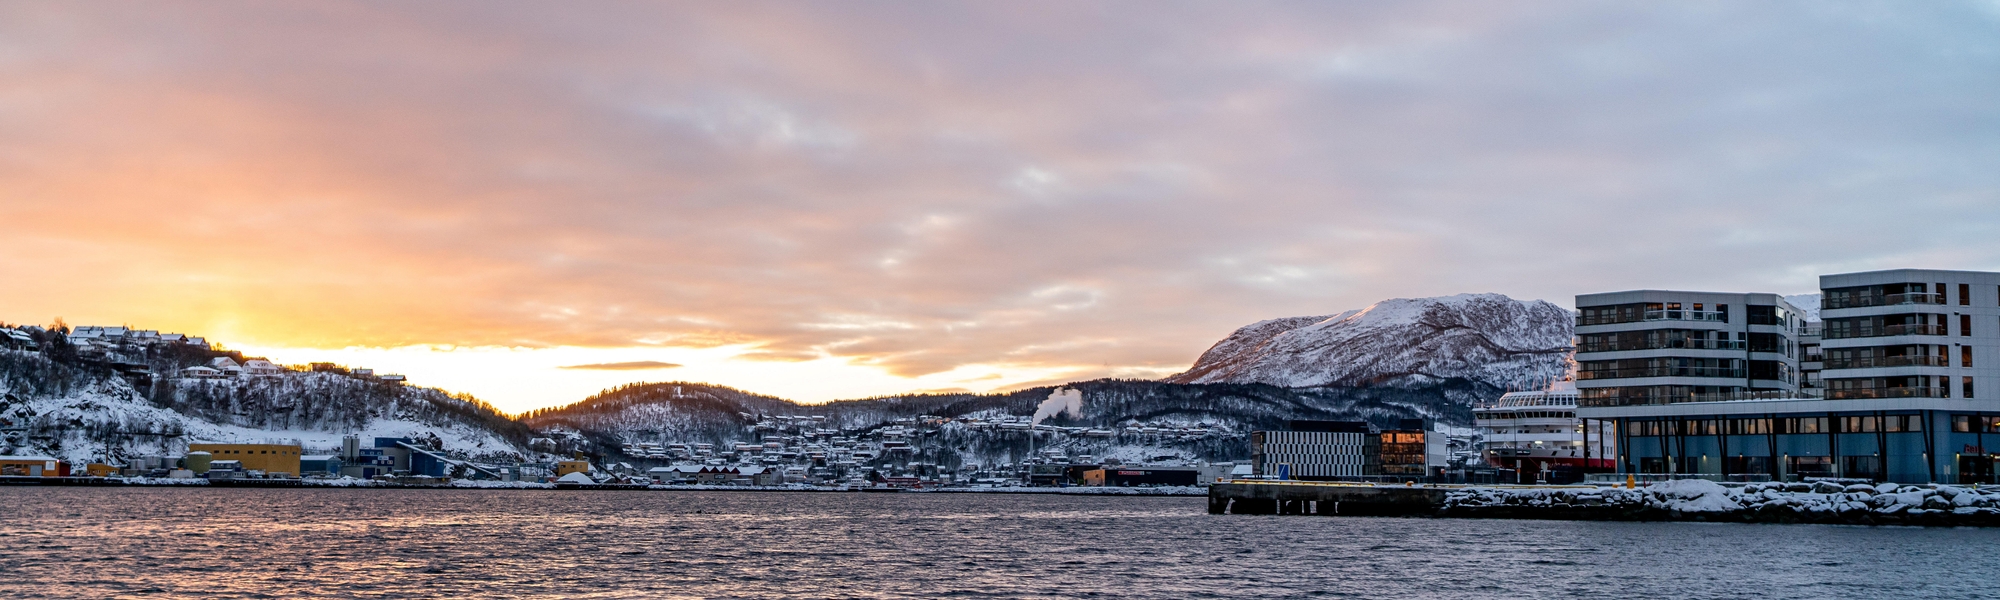 Equinor-kontoret i Harstad, sett fra sjøsiden. Bildet er tatt på vinteren like før solnedgang, med snølandskap i bakgrunnen. 